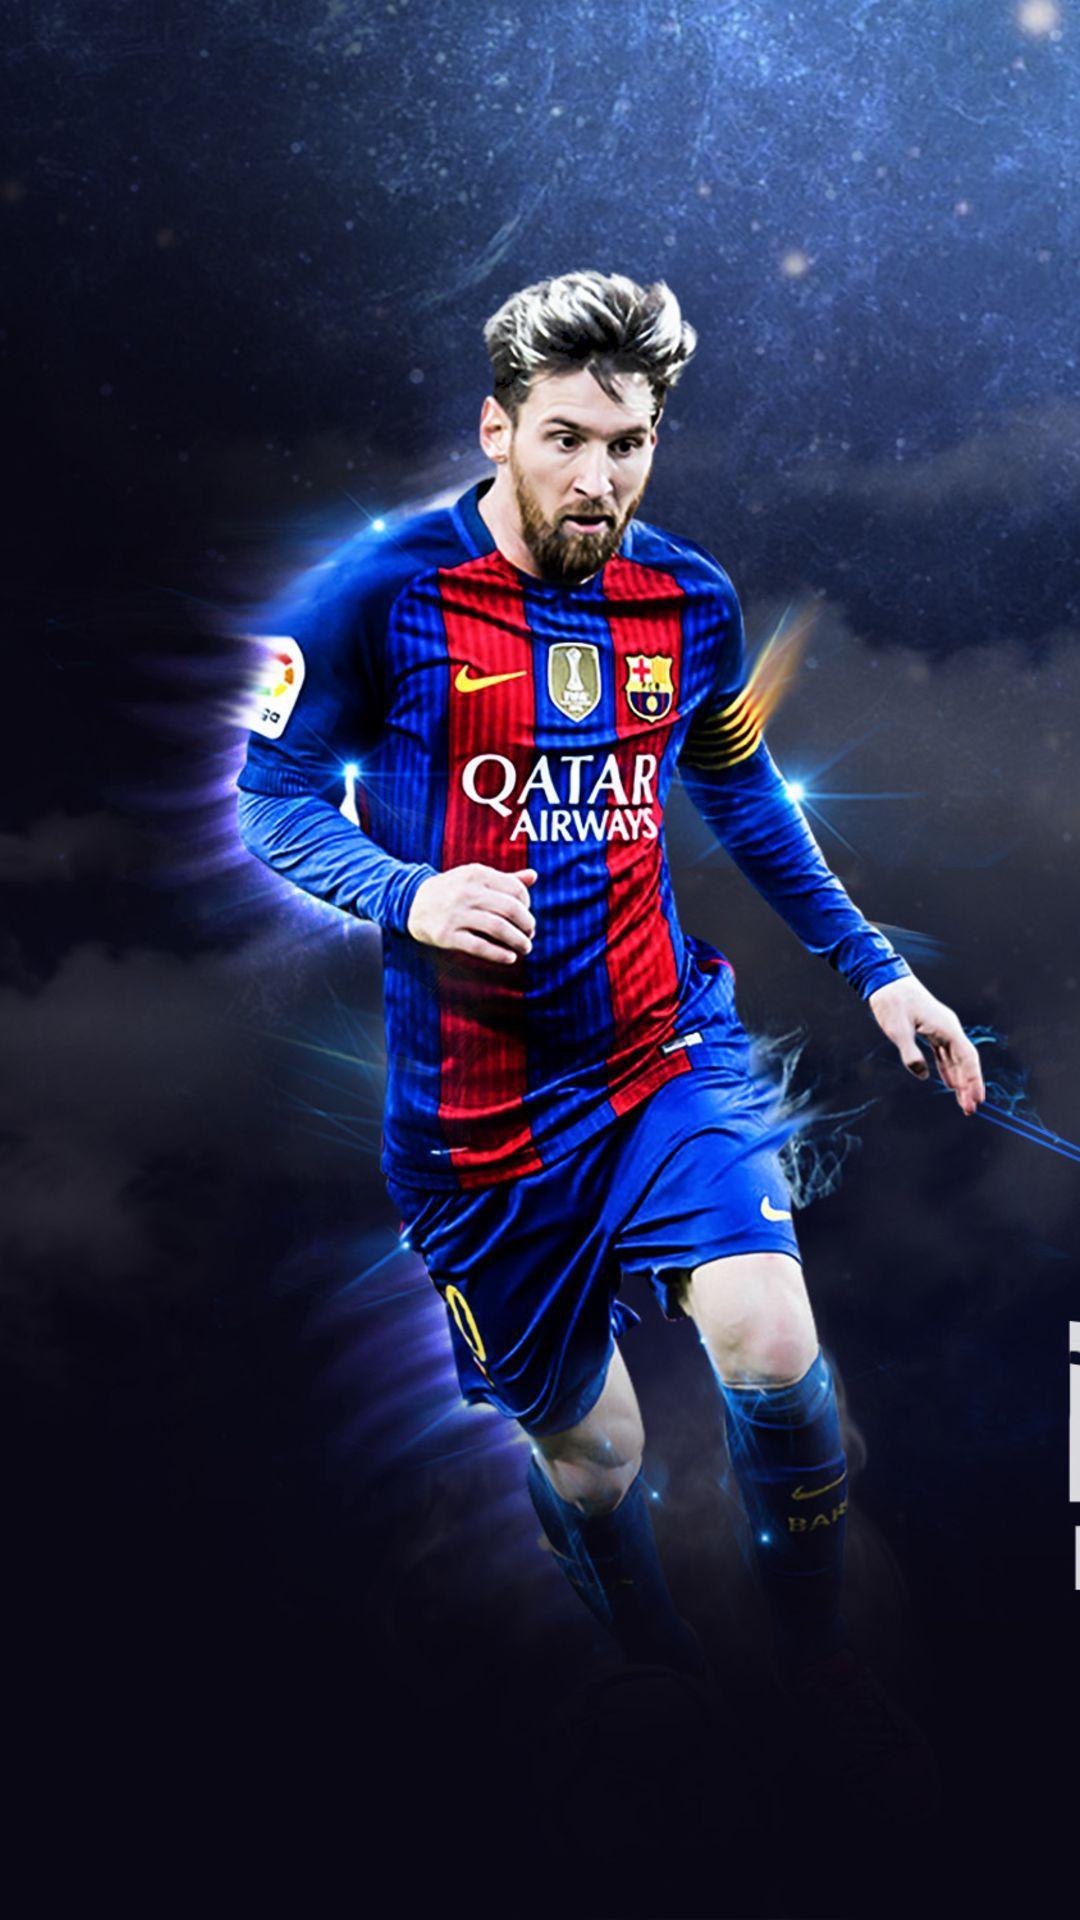 Tải xuống APK Lionel Messi Wallpaper HD để có những bức hình nền chất lượng cao về Lionel Messi. Với độ phân giải cao, bộ sưu tập này sẽ giúp người dùng trải nghiệm hình ảnh cực kỳ chân thực và sắc nét về siêu sao bóng đá Lionel Messi.